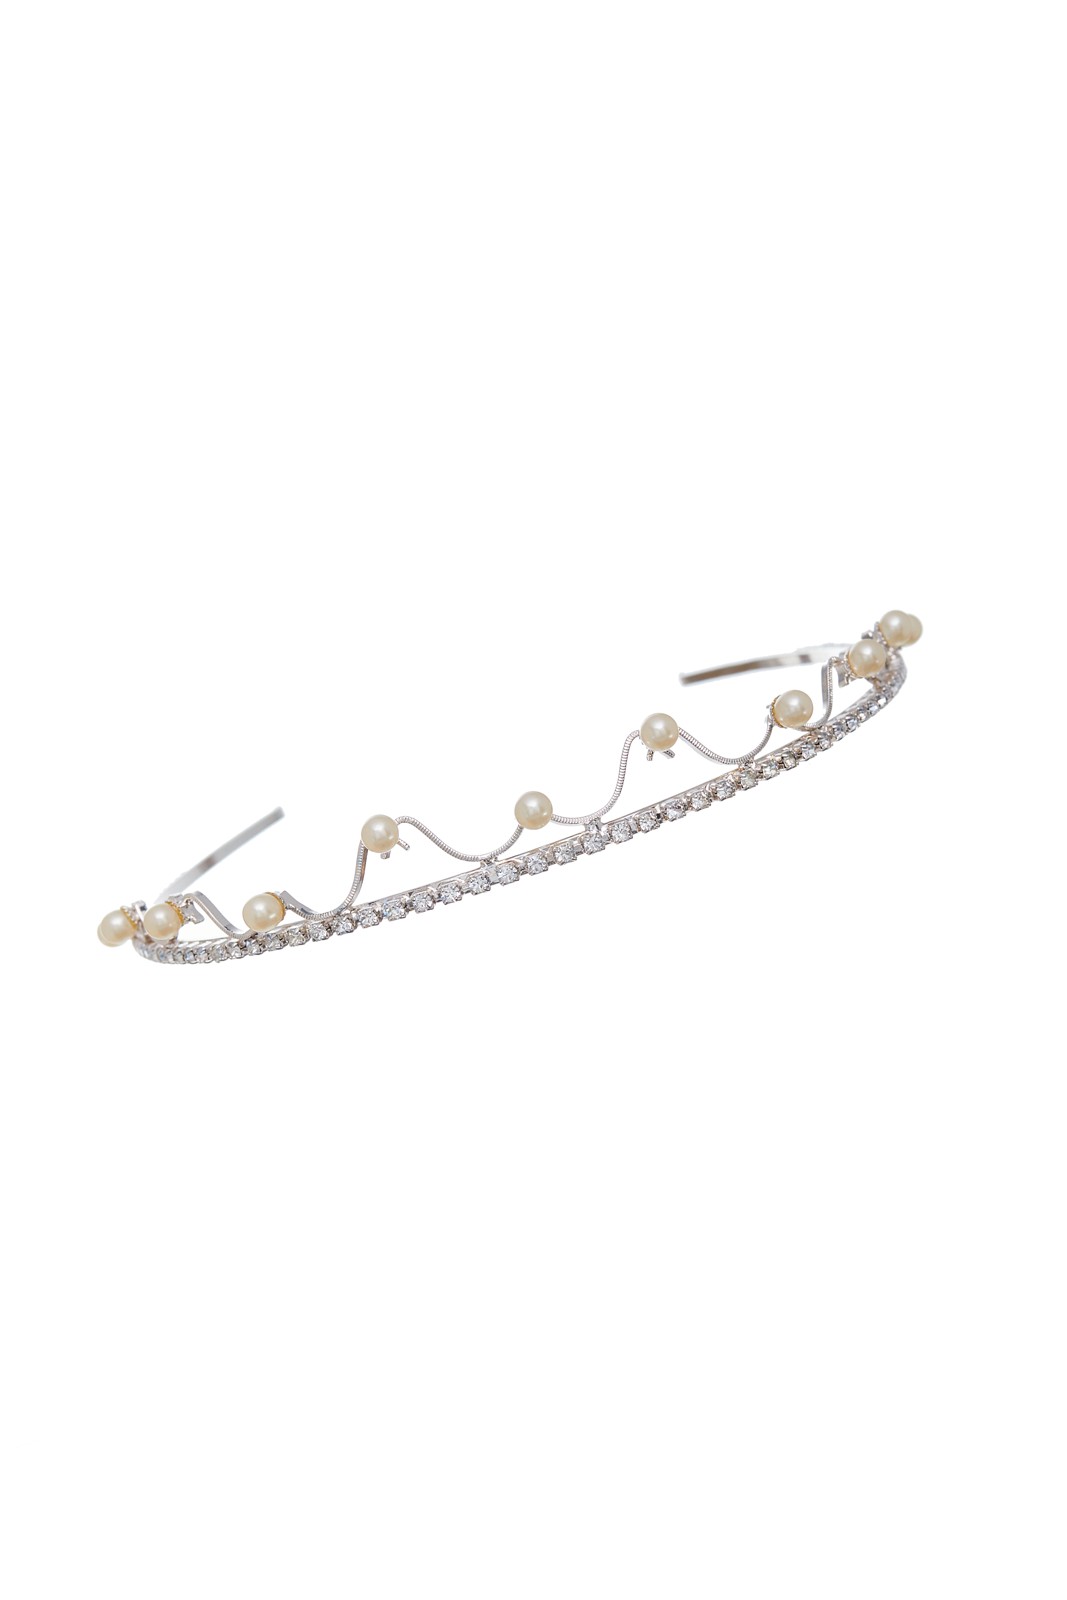 svatební čelenka krystal + perle / stříbrná galvanizace